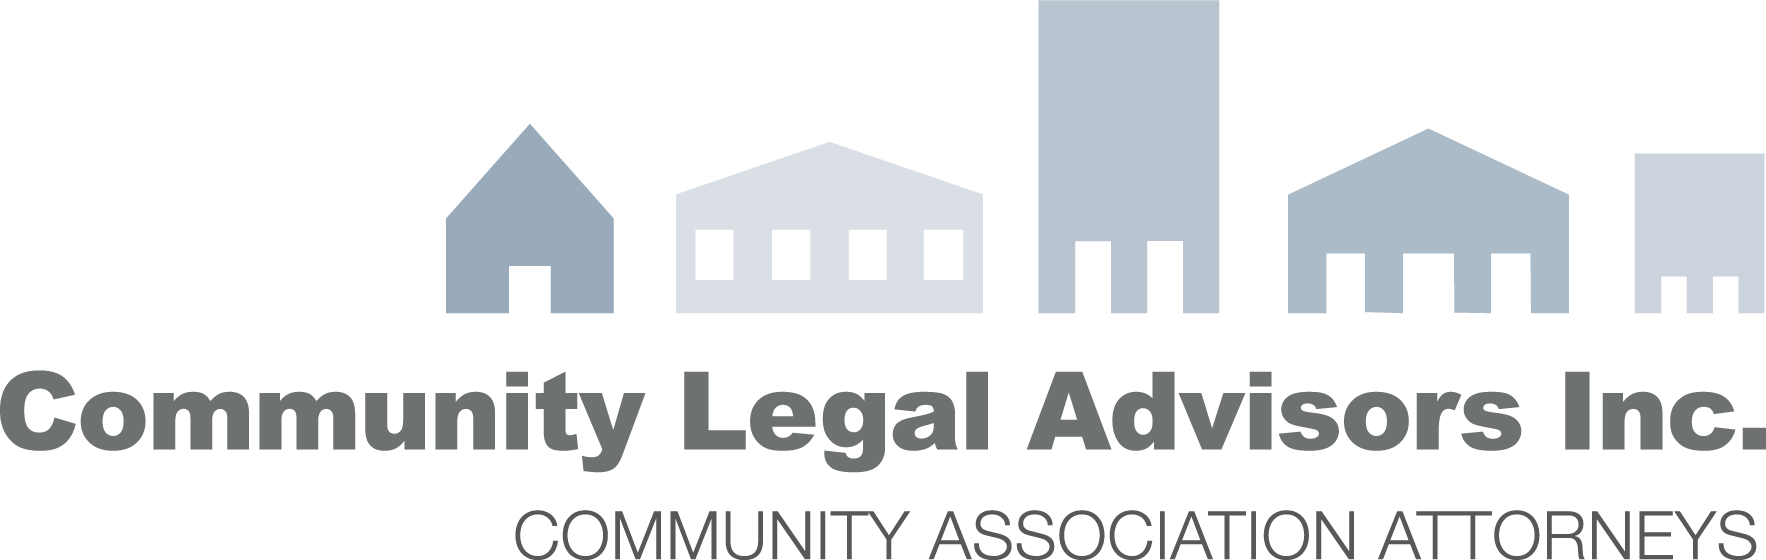 Community Legal Advisors Inc.